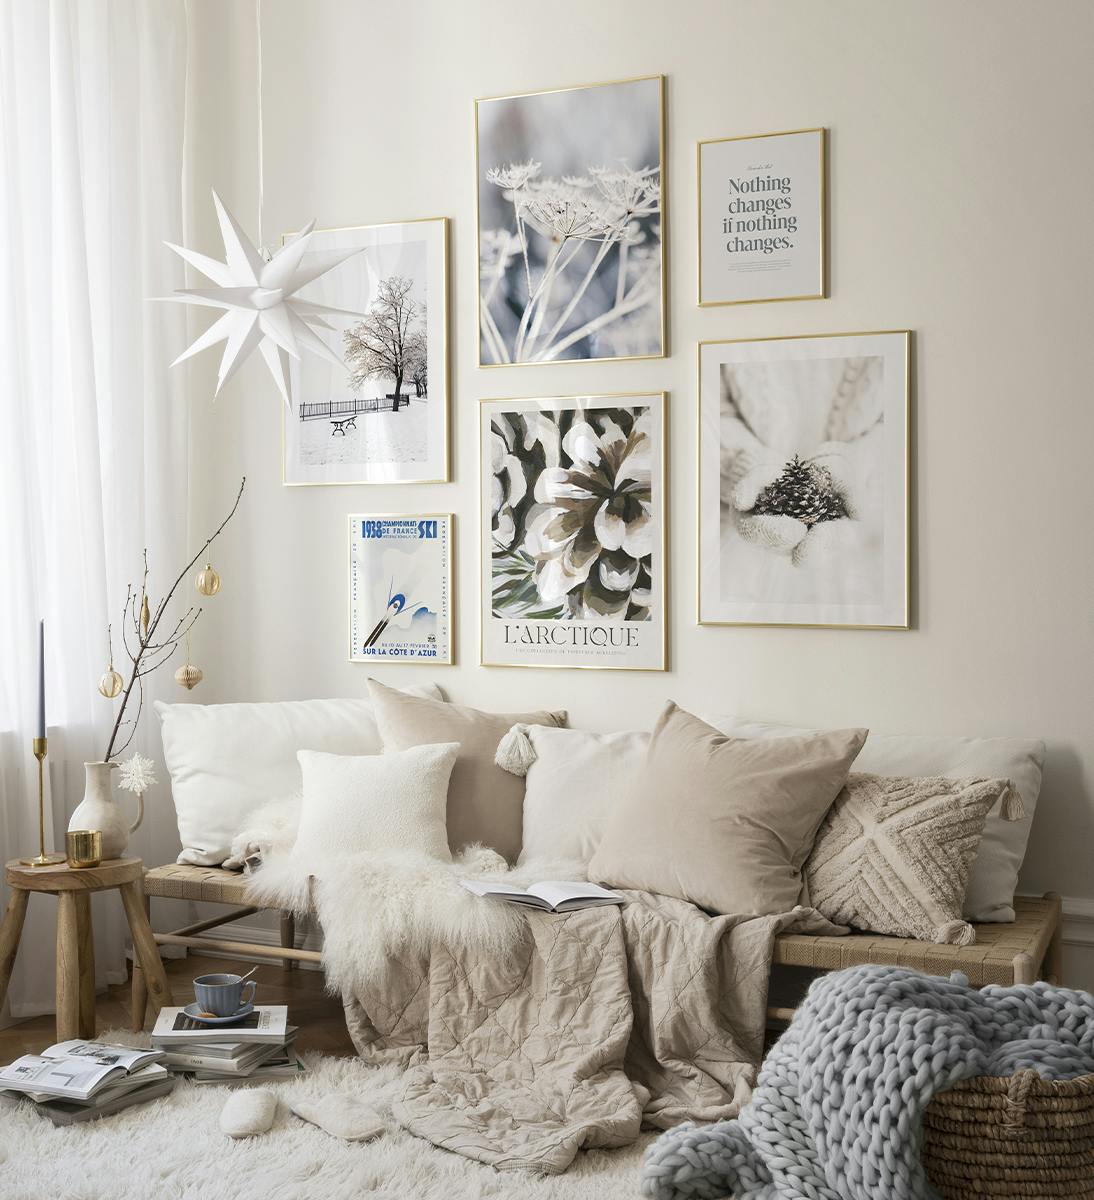 Alakítsd át a nappalidat téli csodavilággá ezzel az aranykeretekkel díszített bézs-fehér galériafallal.